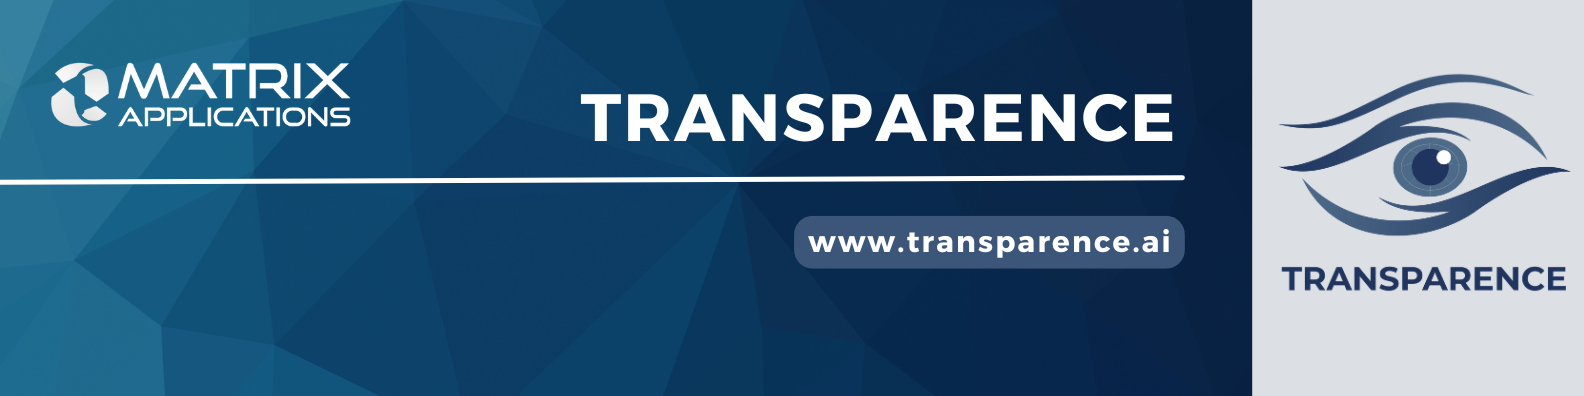 Transparence LinkedIn Banner-2